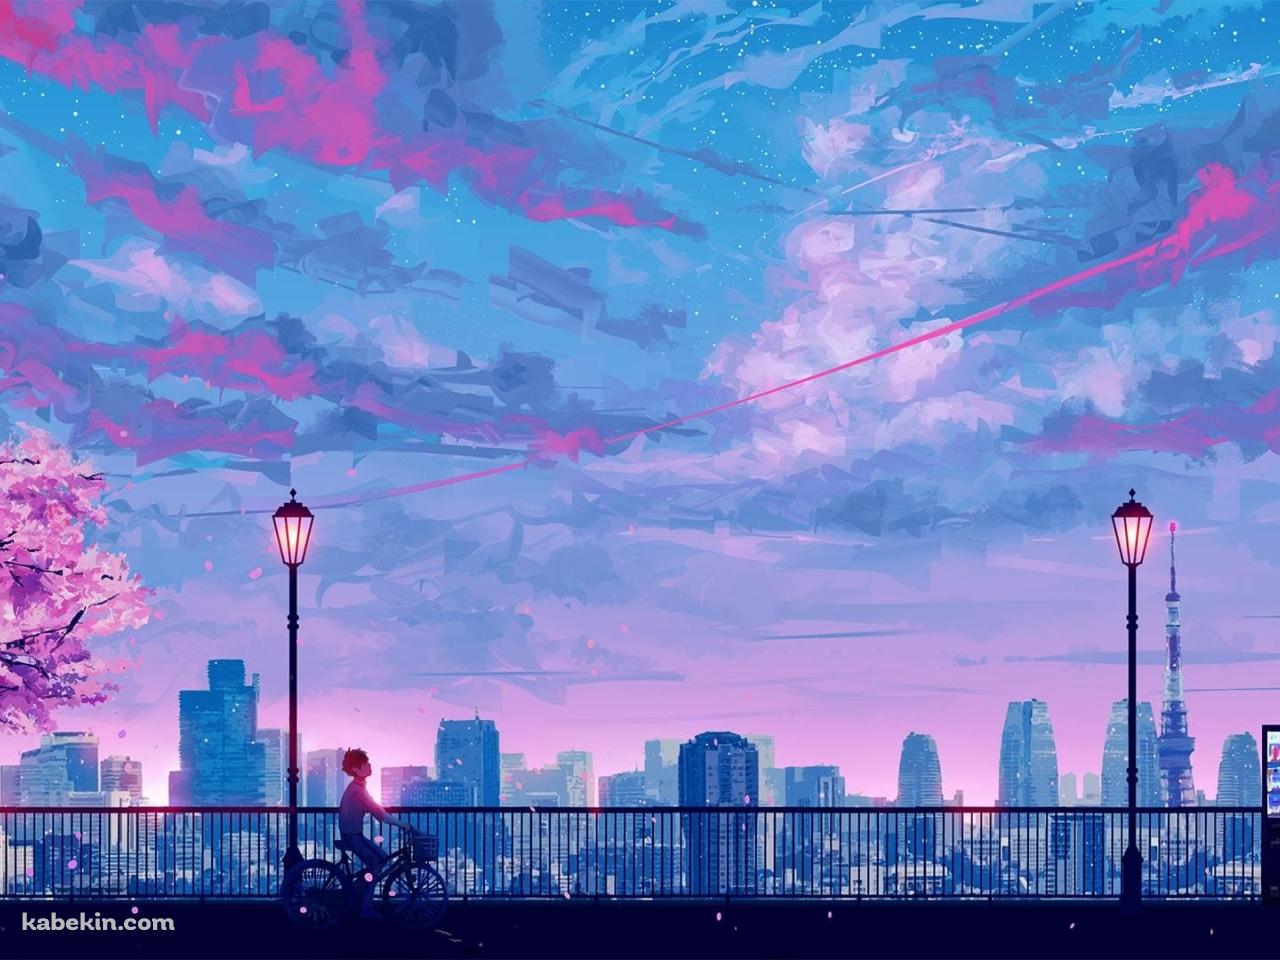 桜 自転車を漕ぐ男性 自動販売機 街灯 東京タワーの壁紙(1280px x 960px) 高画質 PC・デスクトップ用